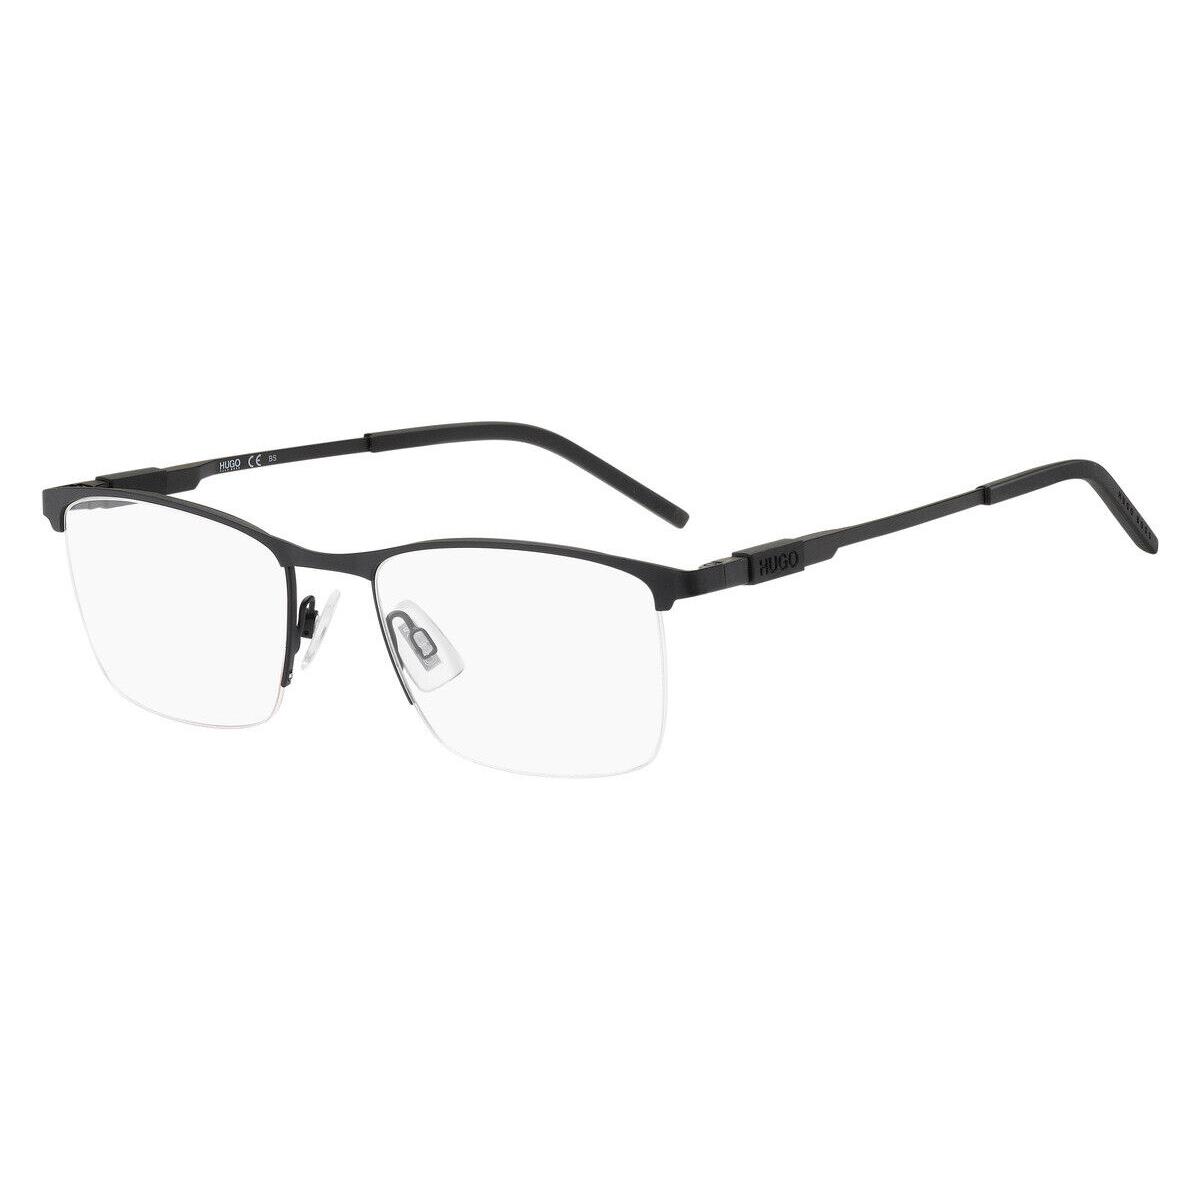 Hugo Boss 1103 Eyeglasses Men 0003 Matte Black Square 54mm